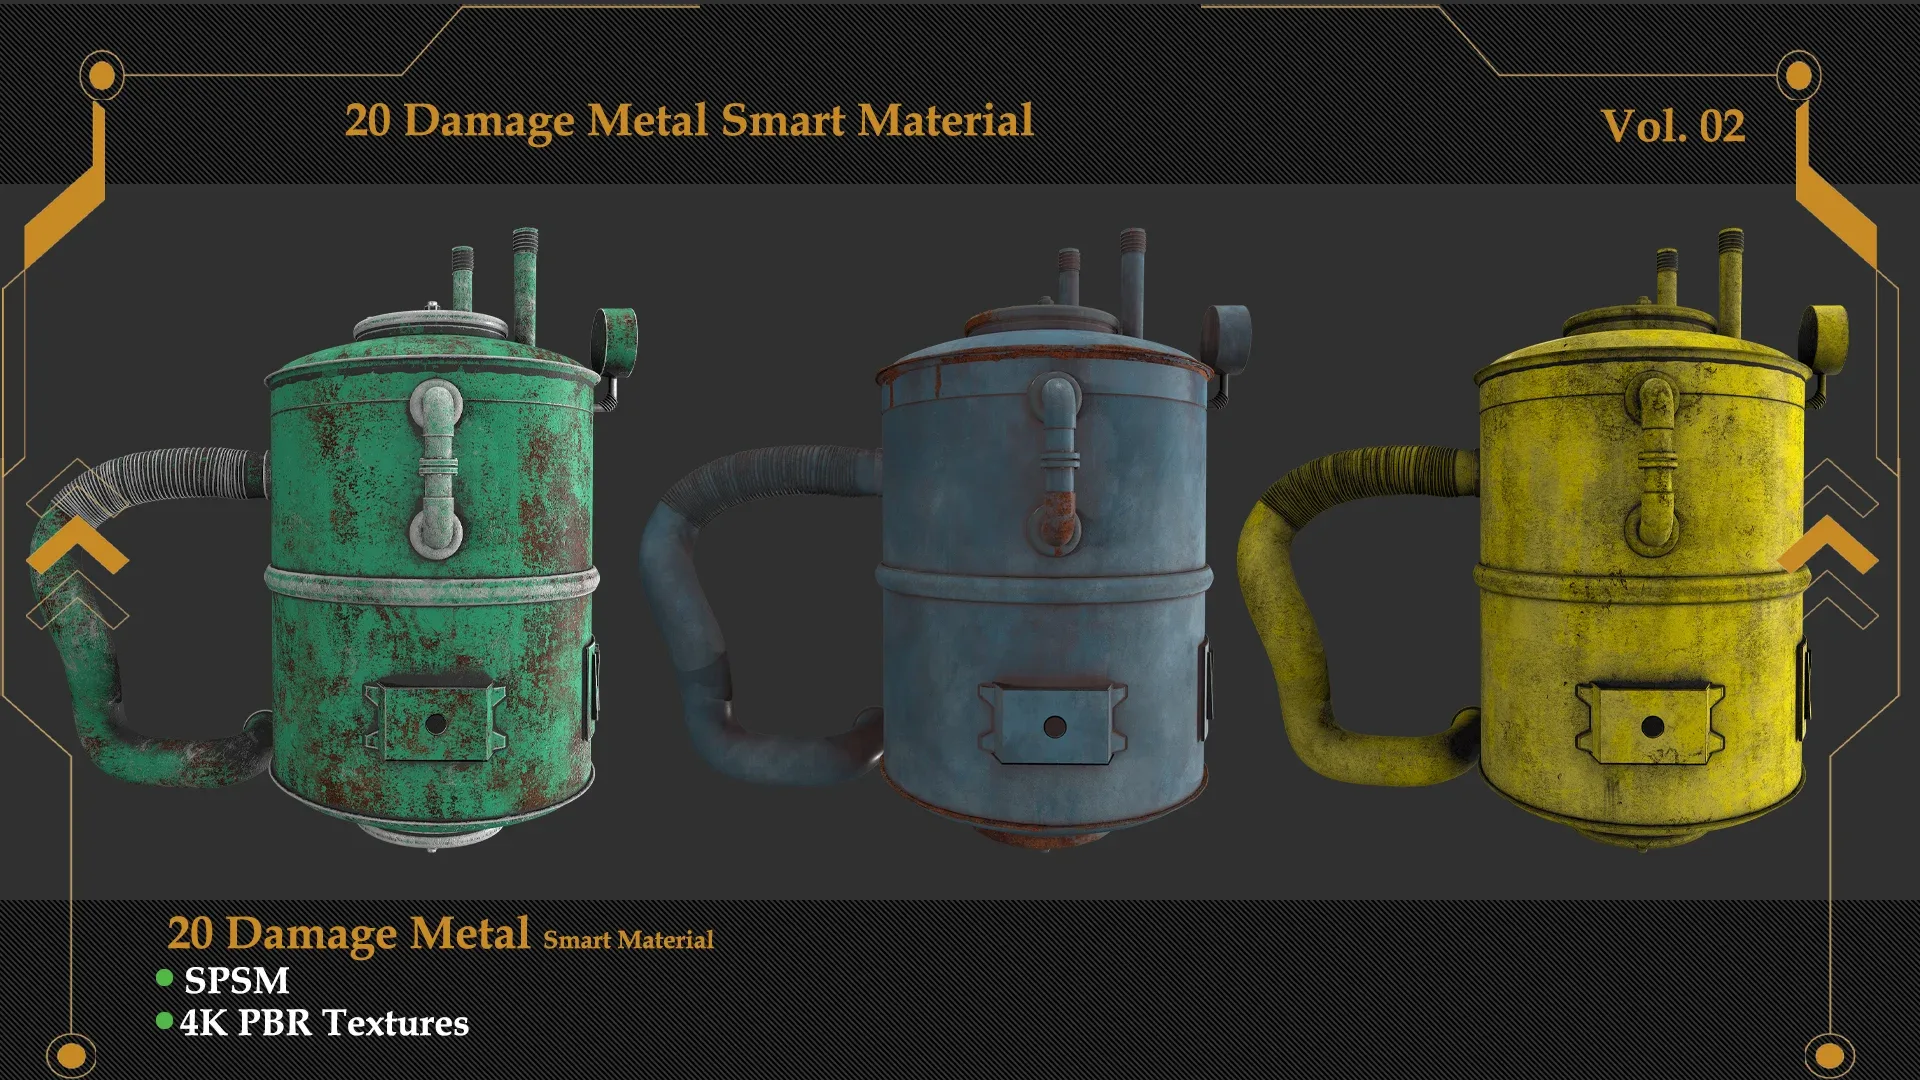 Damaged Metal Smart Material